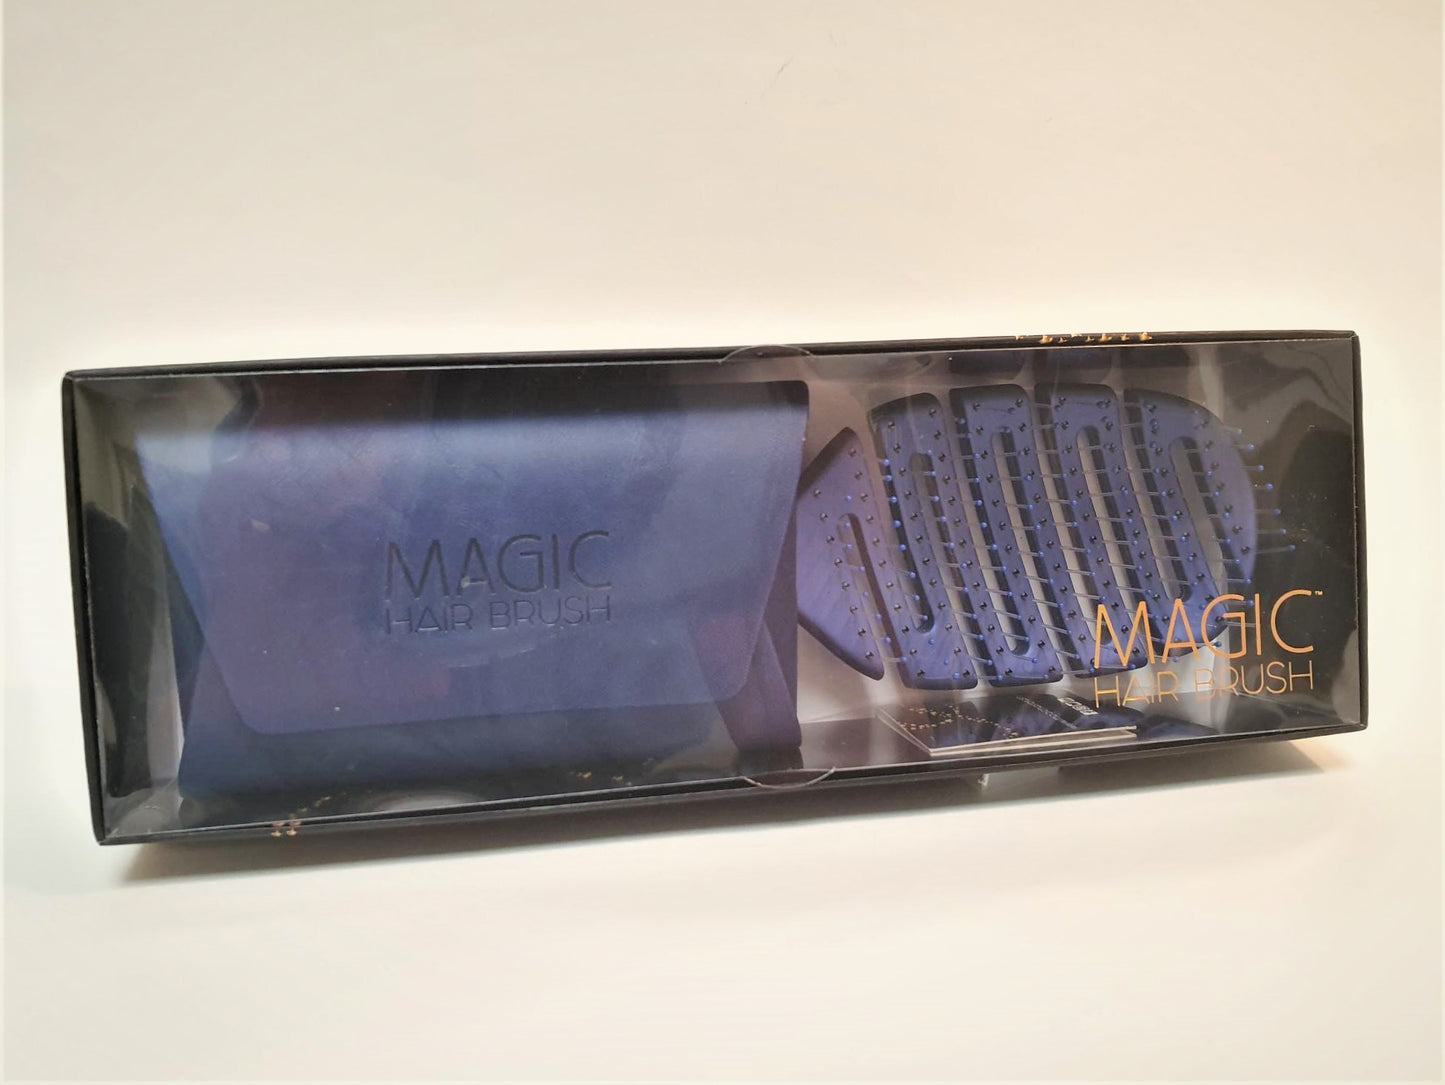 Magic Hair Brush - Blue